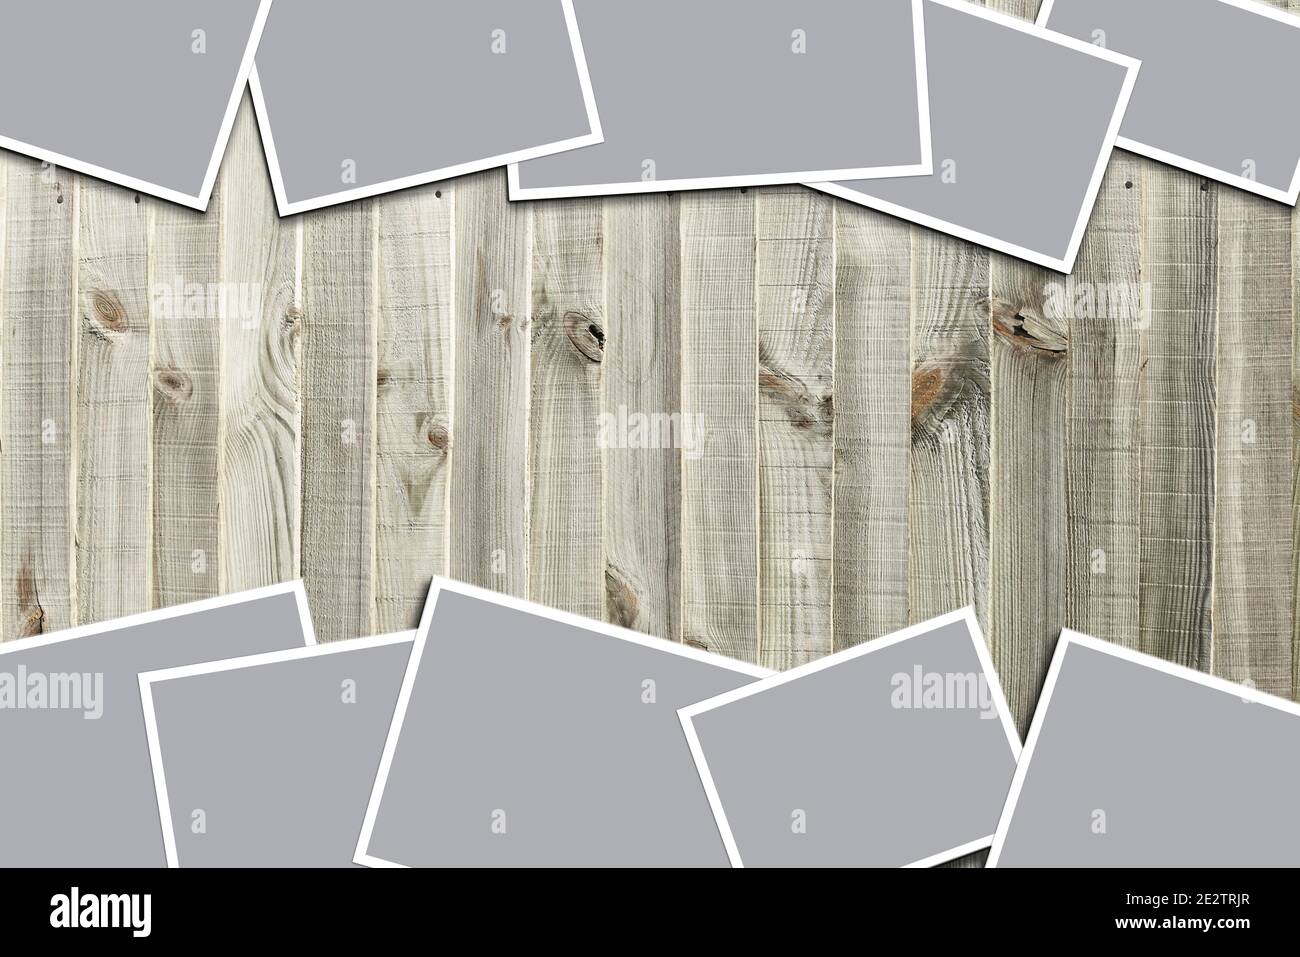 Vorlagen Collage von Rahmen Fotos. Board Branding Präsentation auf Holzbrett. Moodboard von Fotos. Modell mit Posterrahmen. Collage-Konzept. Stockfoto